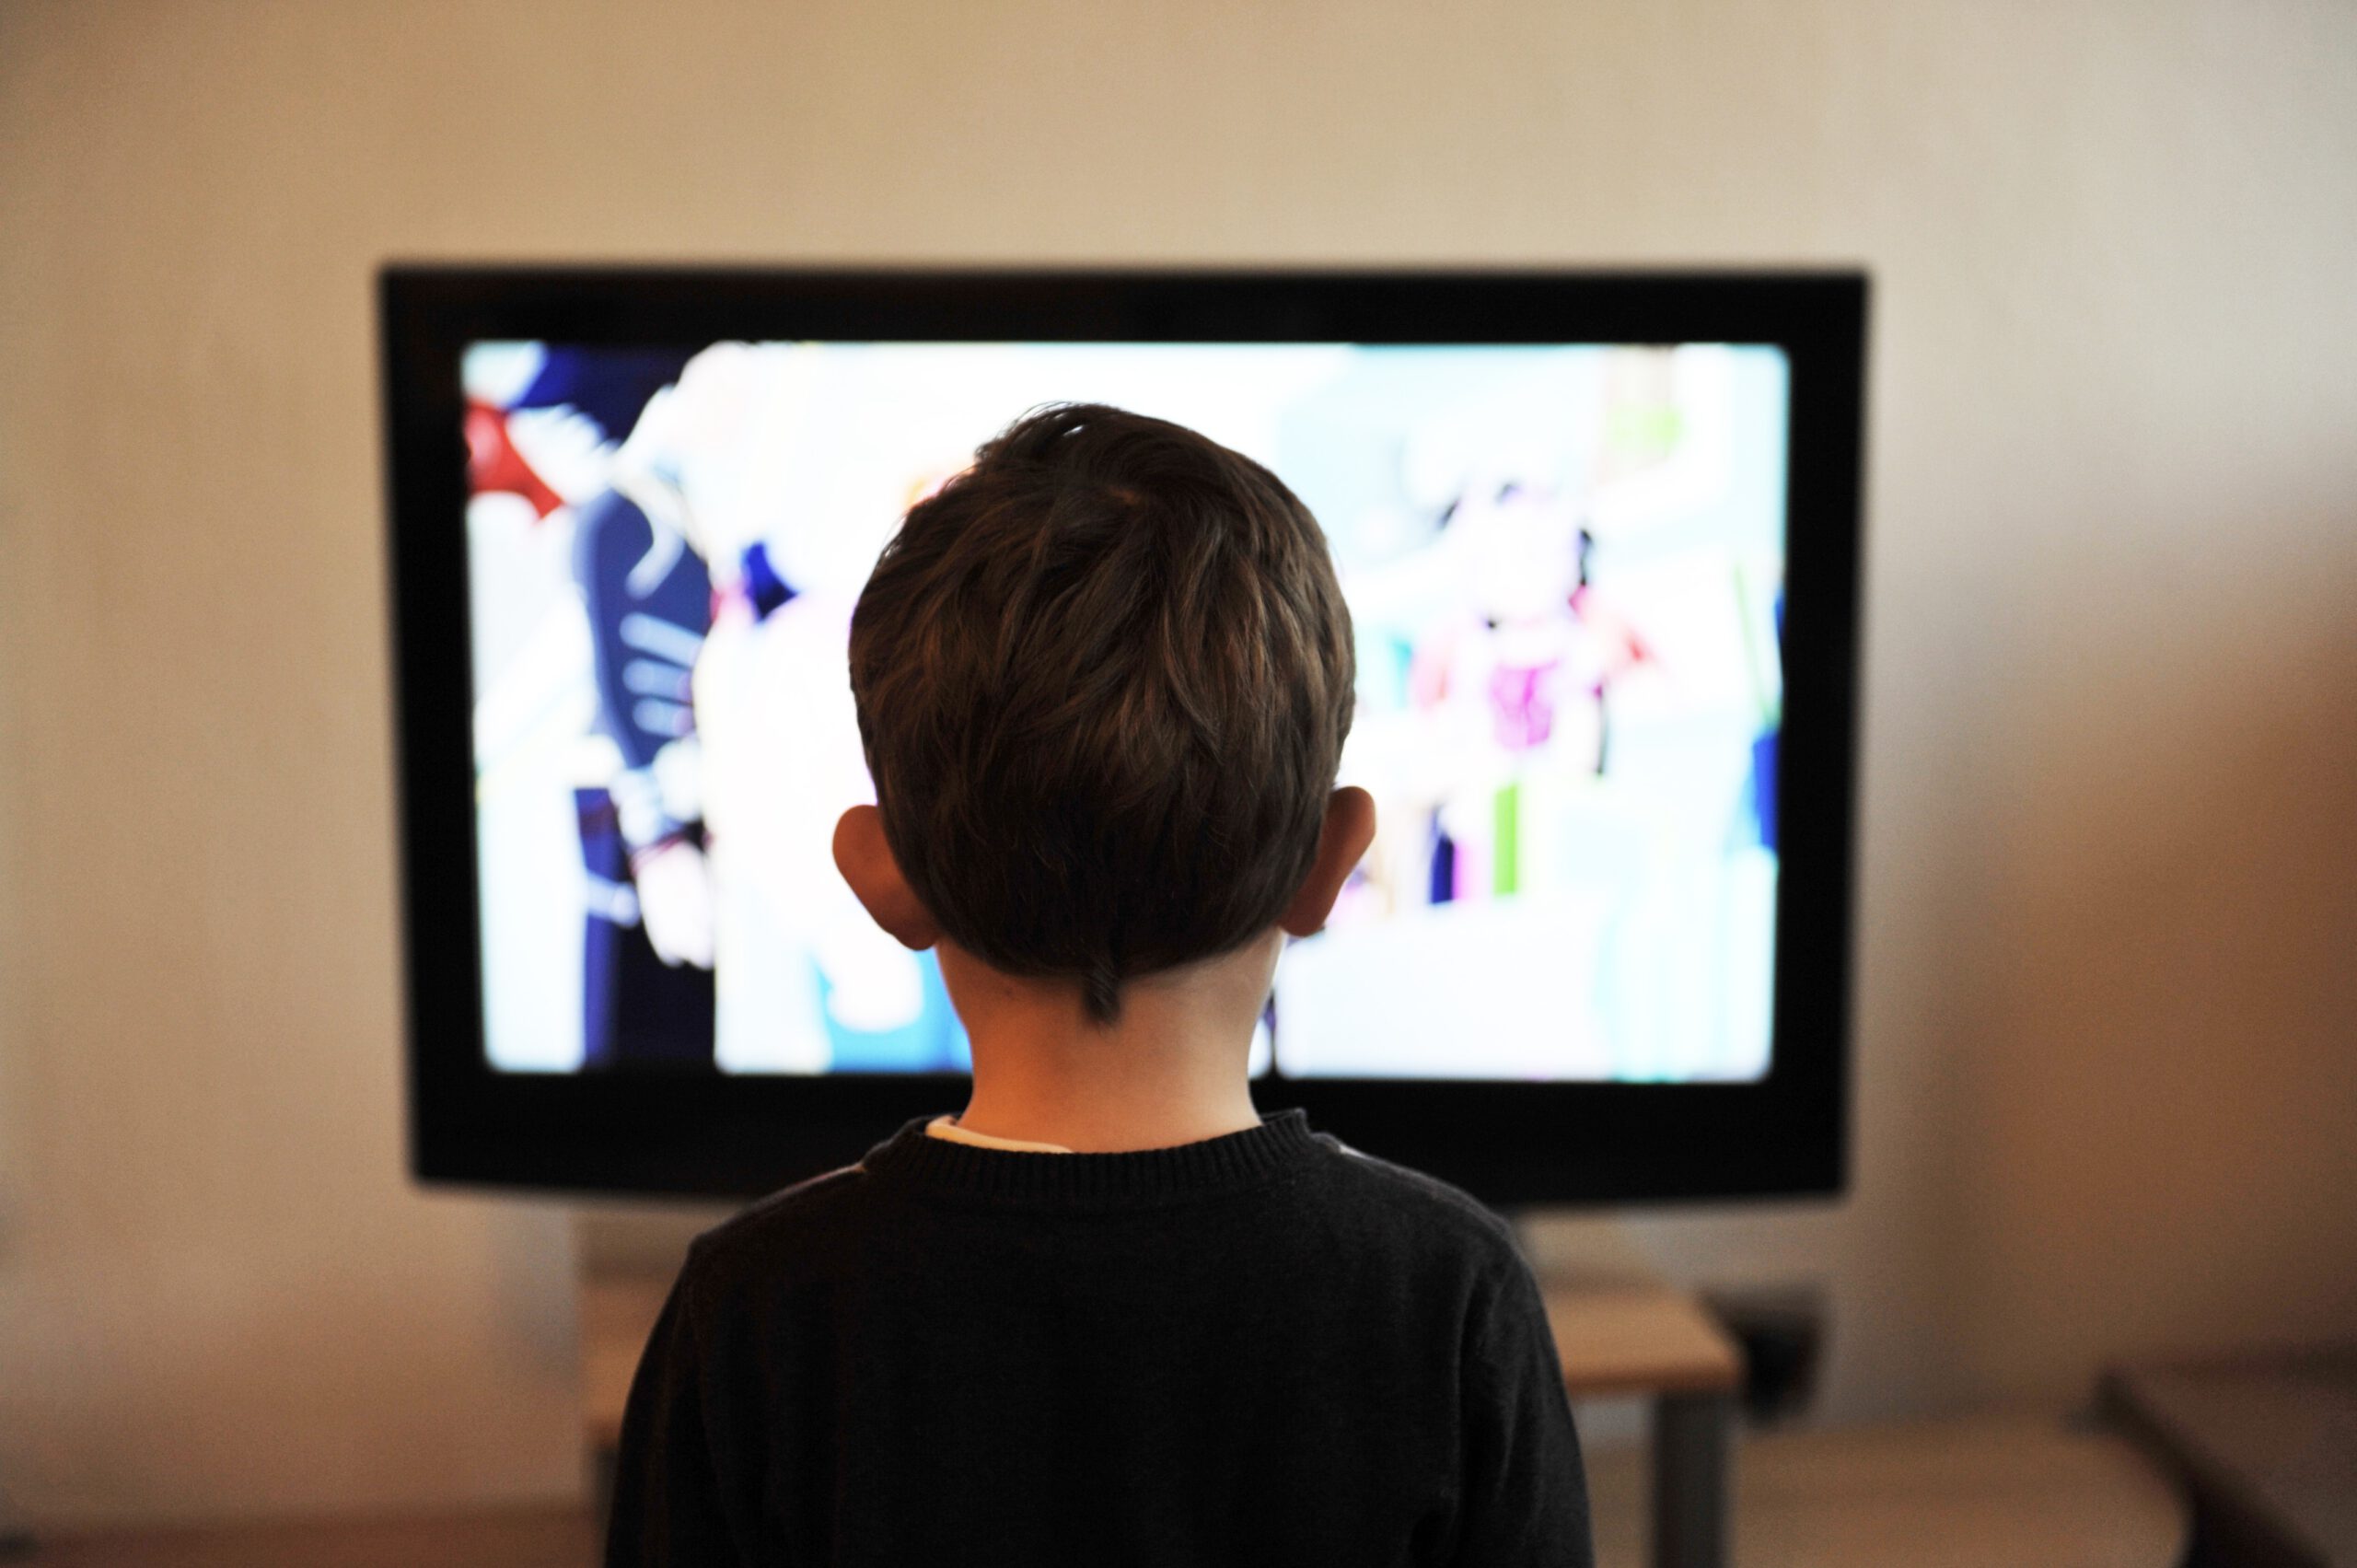 Im Vordergrund ist ein Kind zu sehen, welches auf einen Fernseher guckt, der im Hintergrund steht.